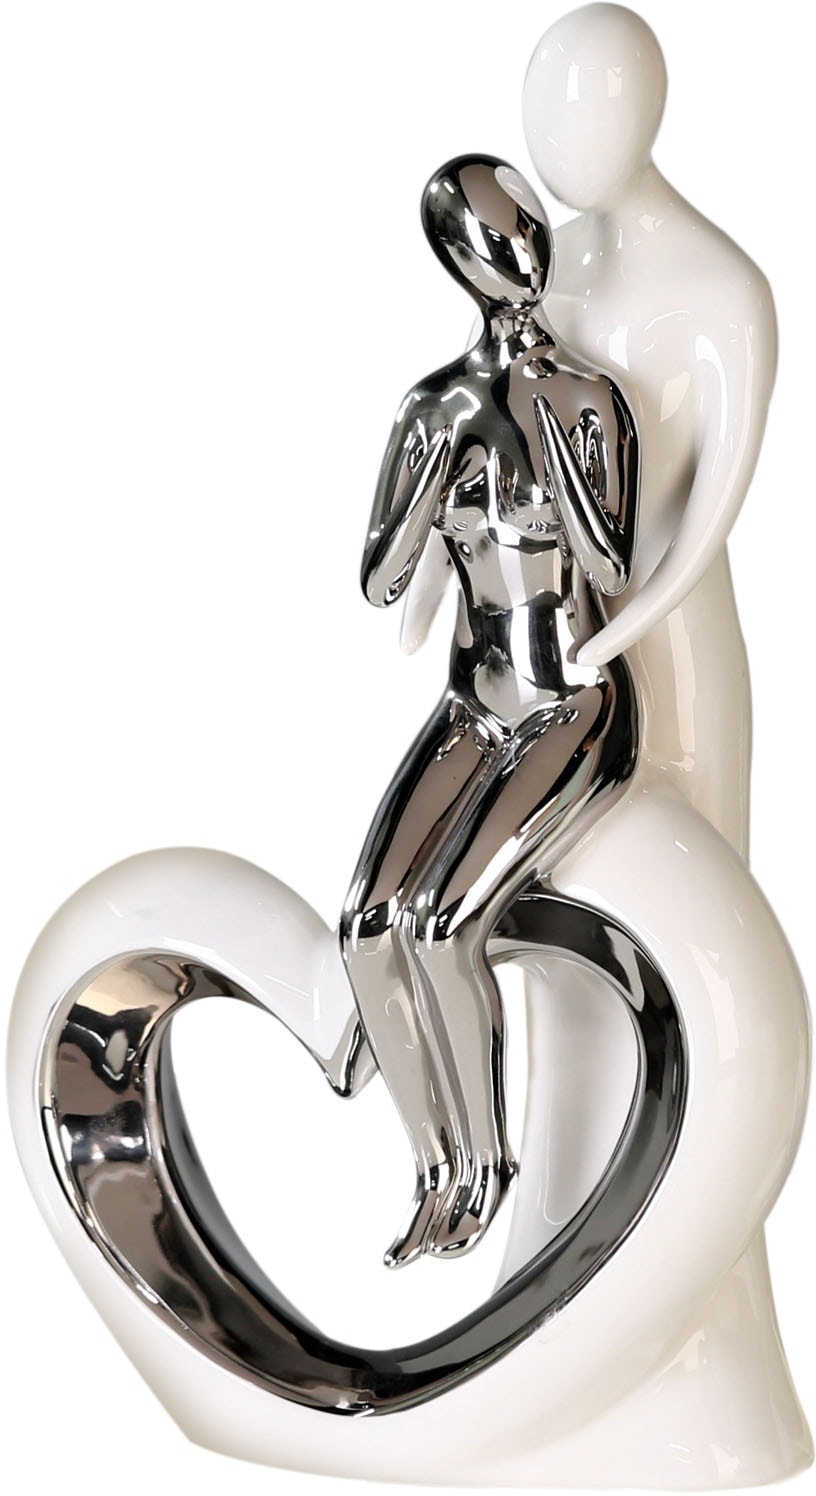 GILDE Dekofigur »Skulptur Romanze, weiss/silber«, Dekoobjekt, Höhe 33,5, aus Keramik, Wohnzimmer